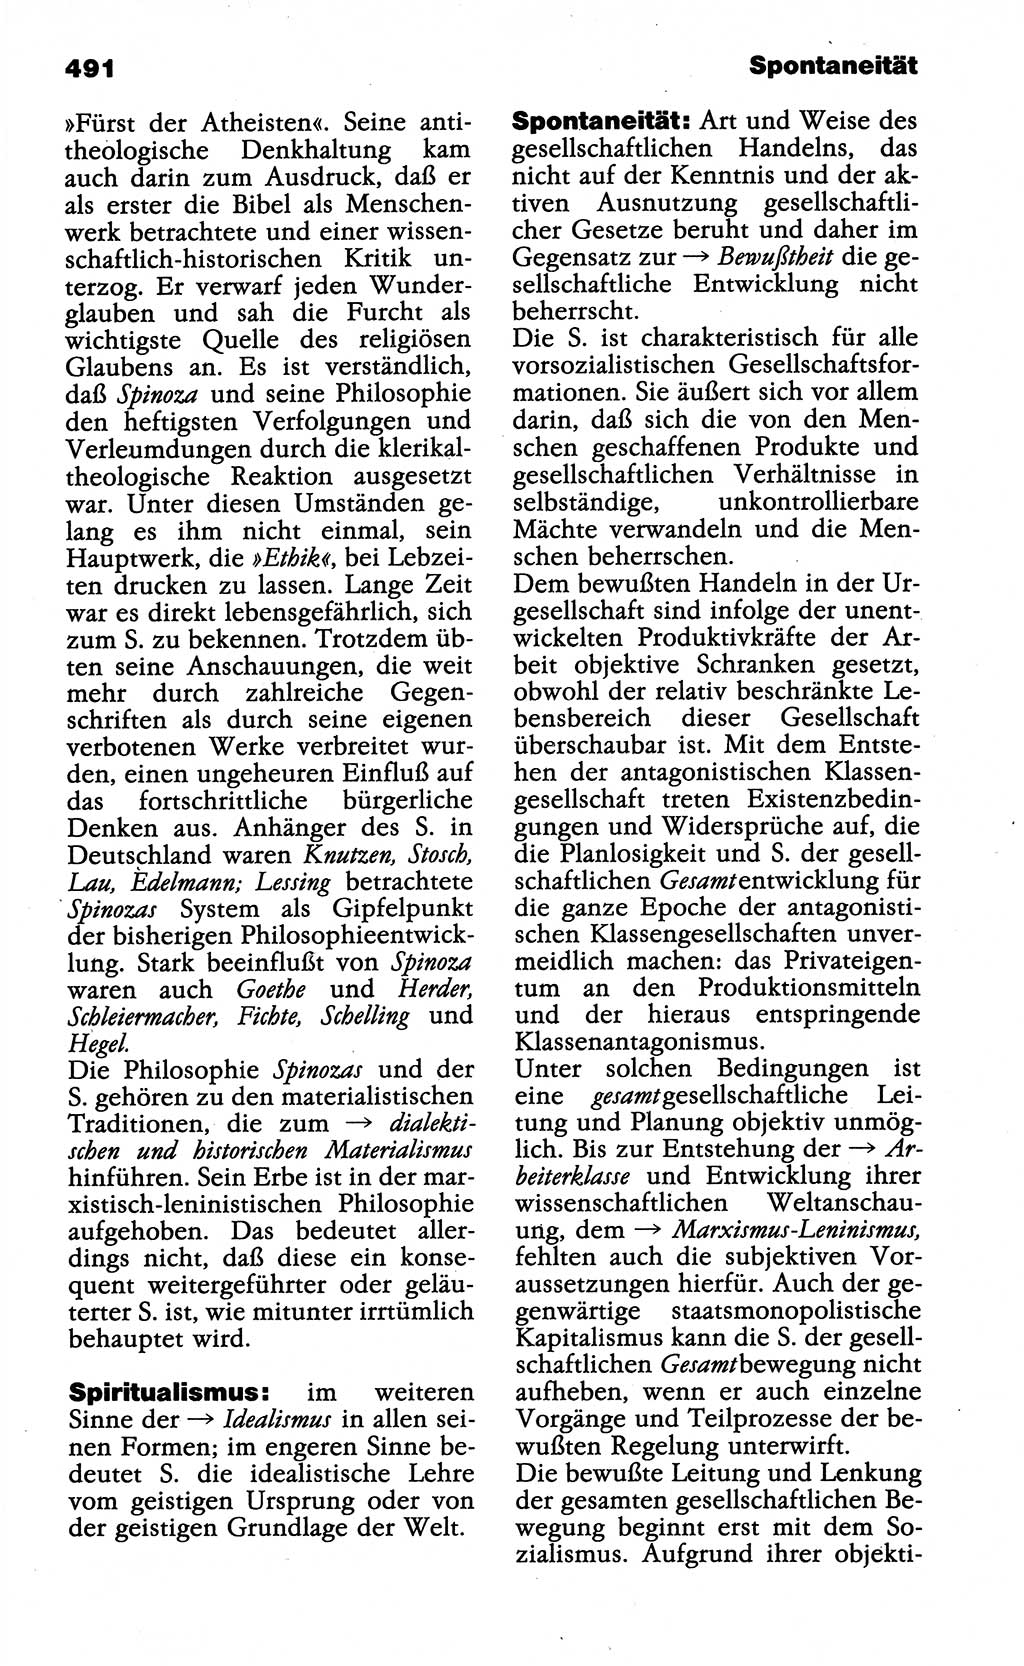 Wörterbuch der marxistisch-leninistischen Philosophie [Deutsche Demokratische Republik (DDR)] 1985, Seite 491 (Wb. ML Phil. DDR 1985, S. 491)